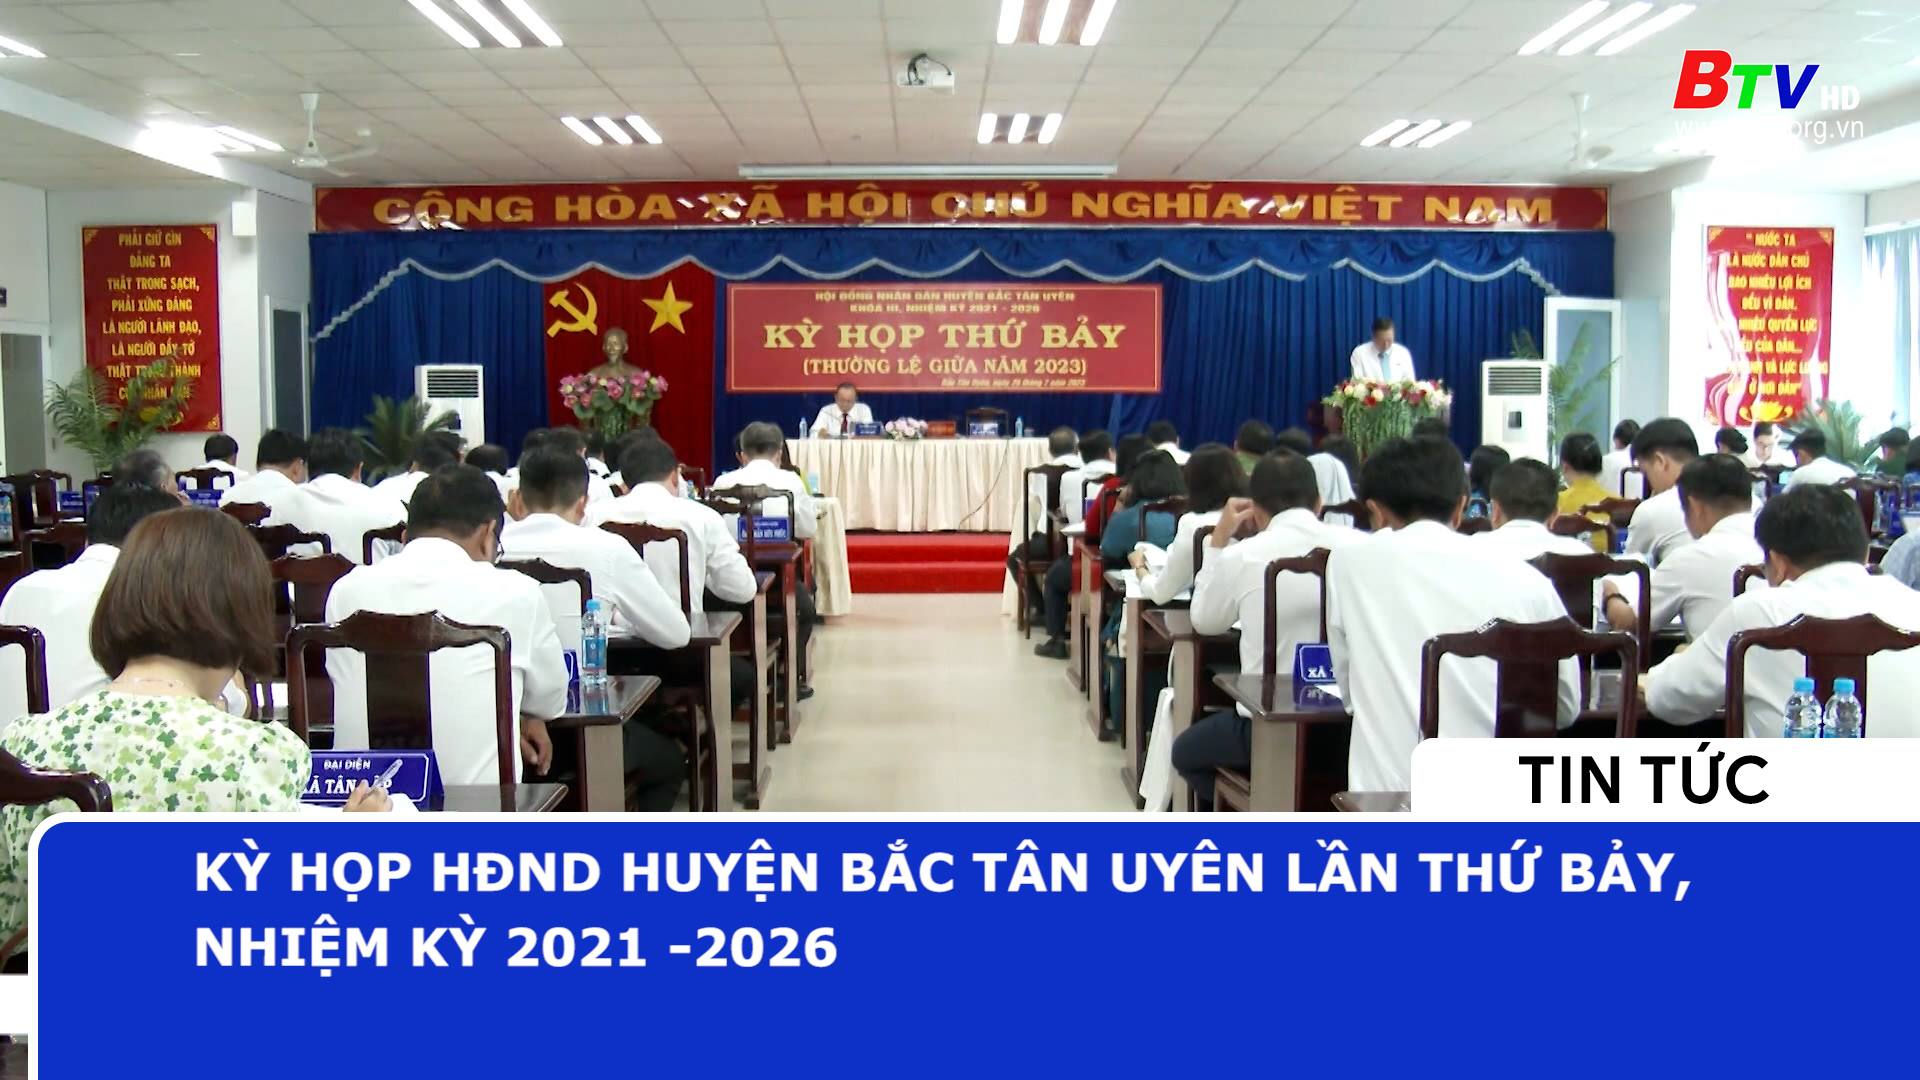 Kỳ họp HĐND huyện Bắc Tân Uyên lần thứ bảy, nhiệm kỳ 2021-2026